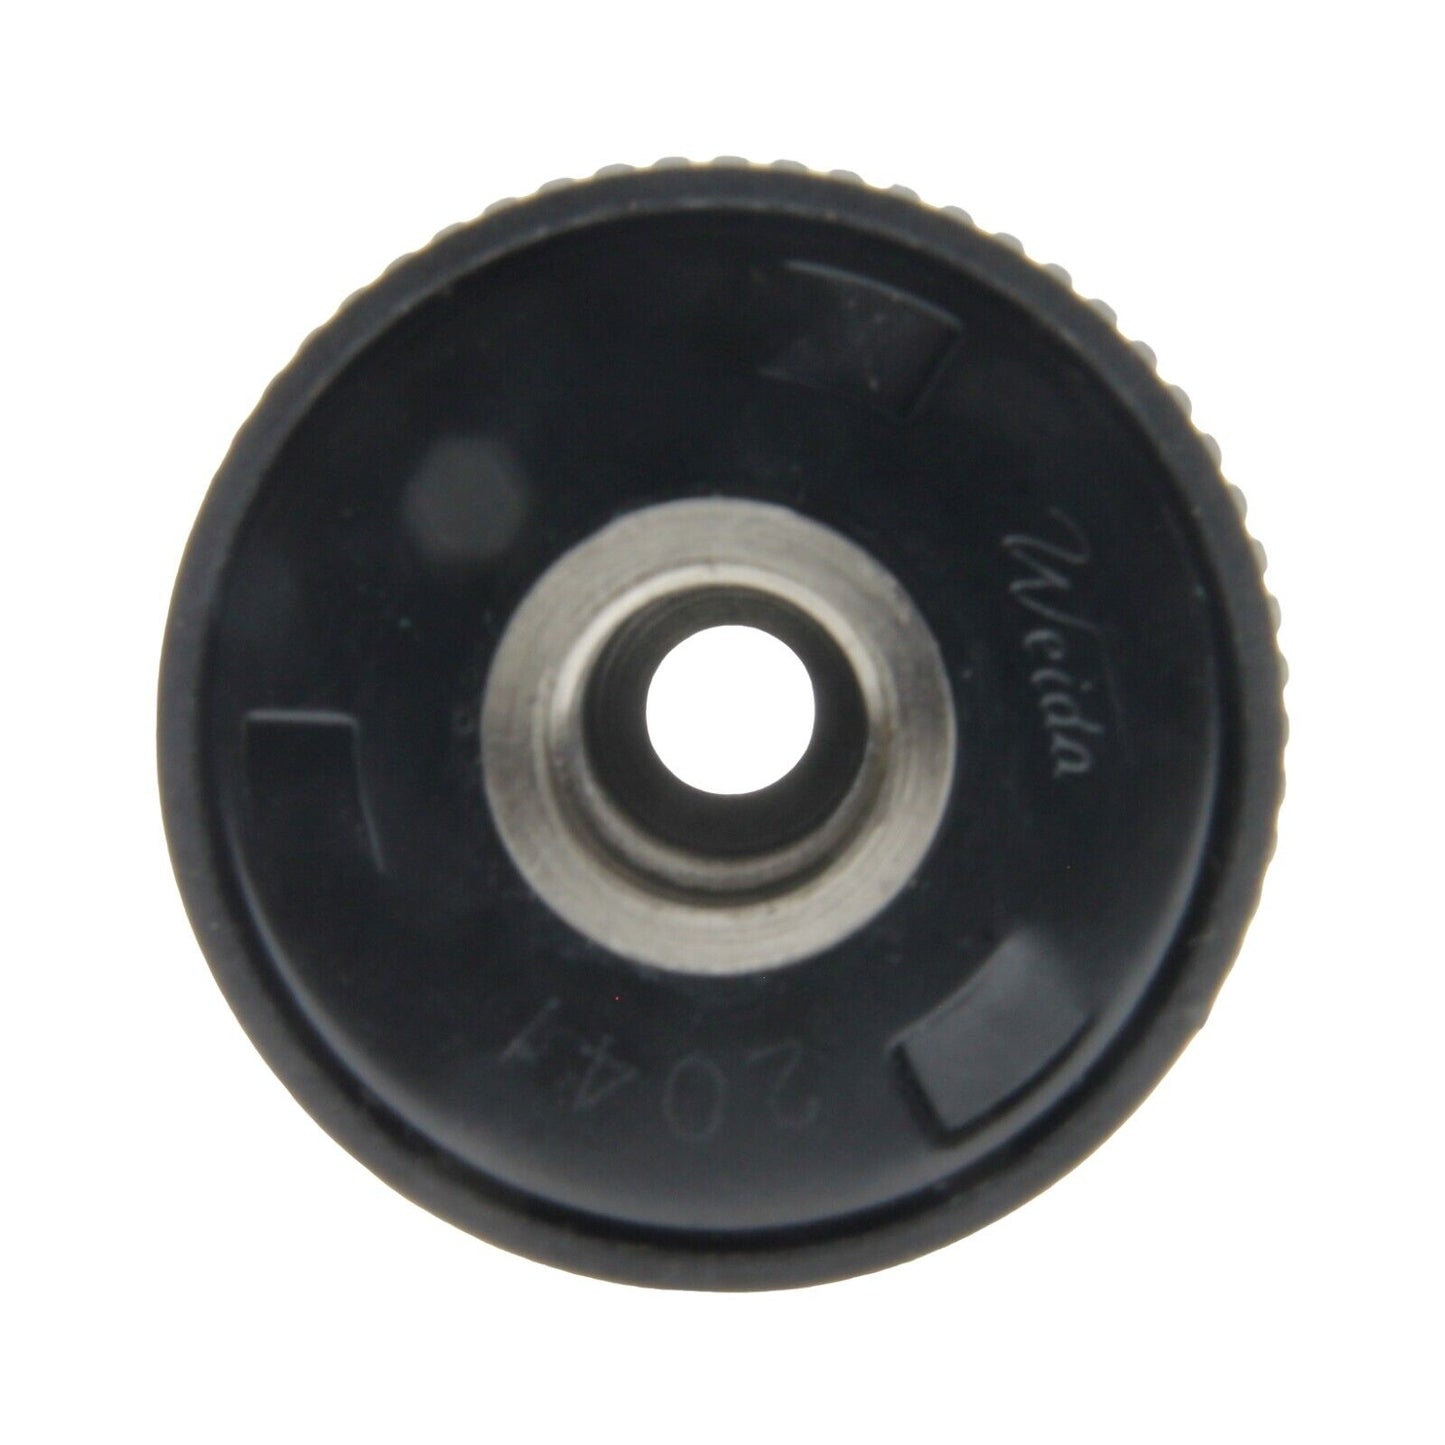 Black & Decker mandrino auto serrante Weida porta punte 1-13mm trapano BL188